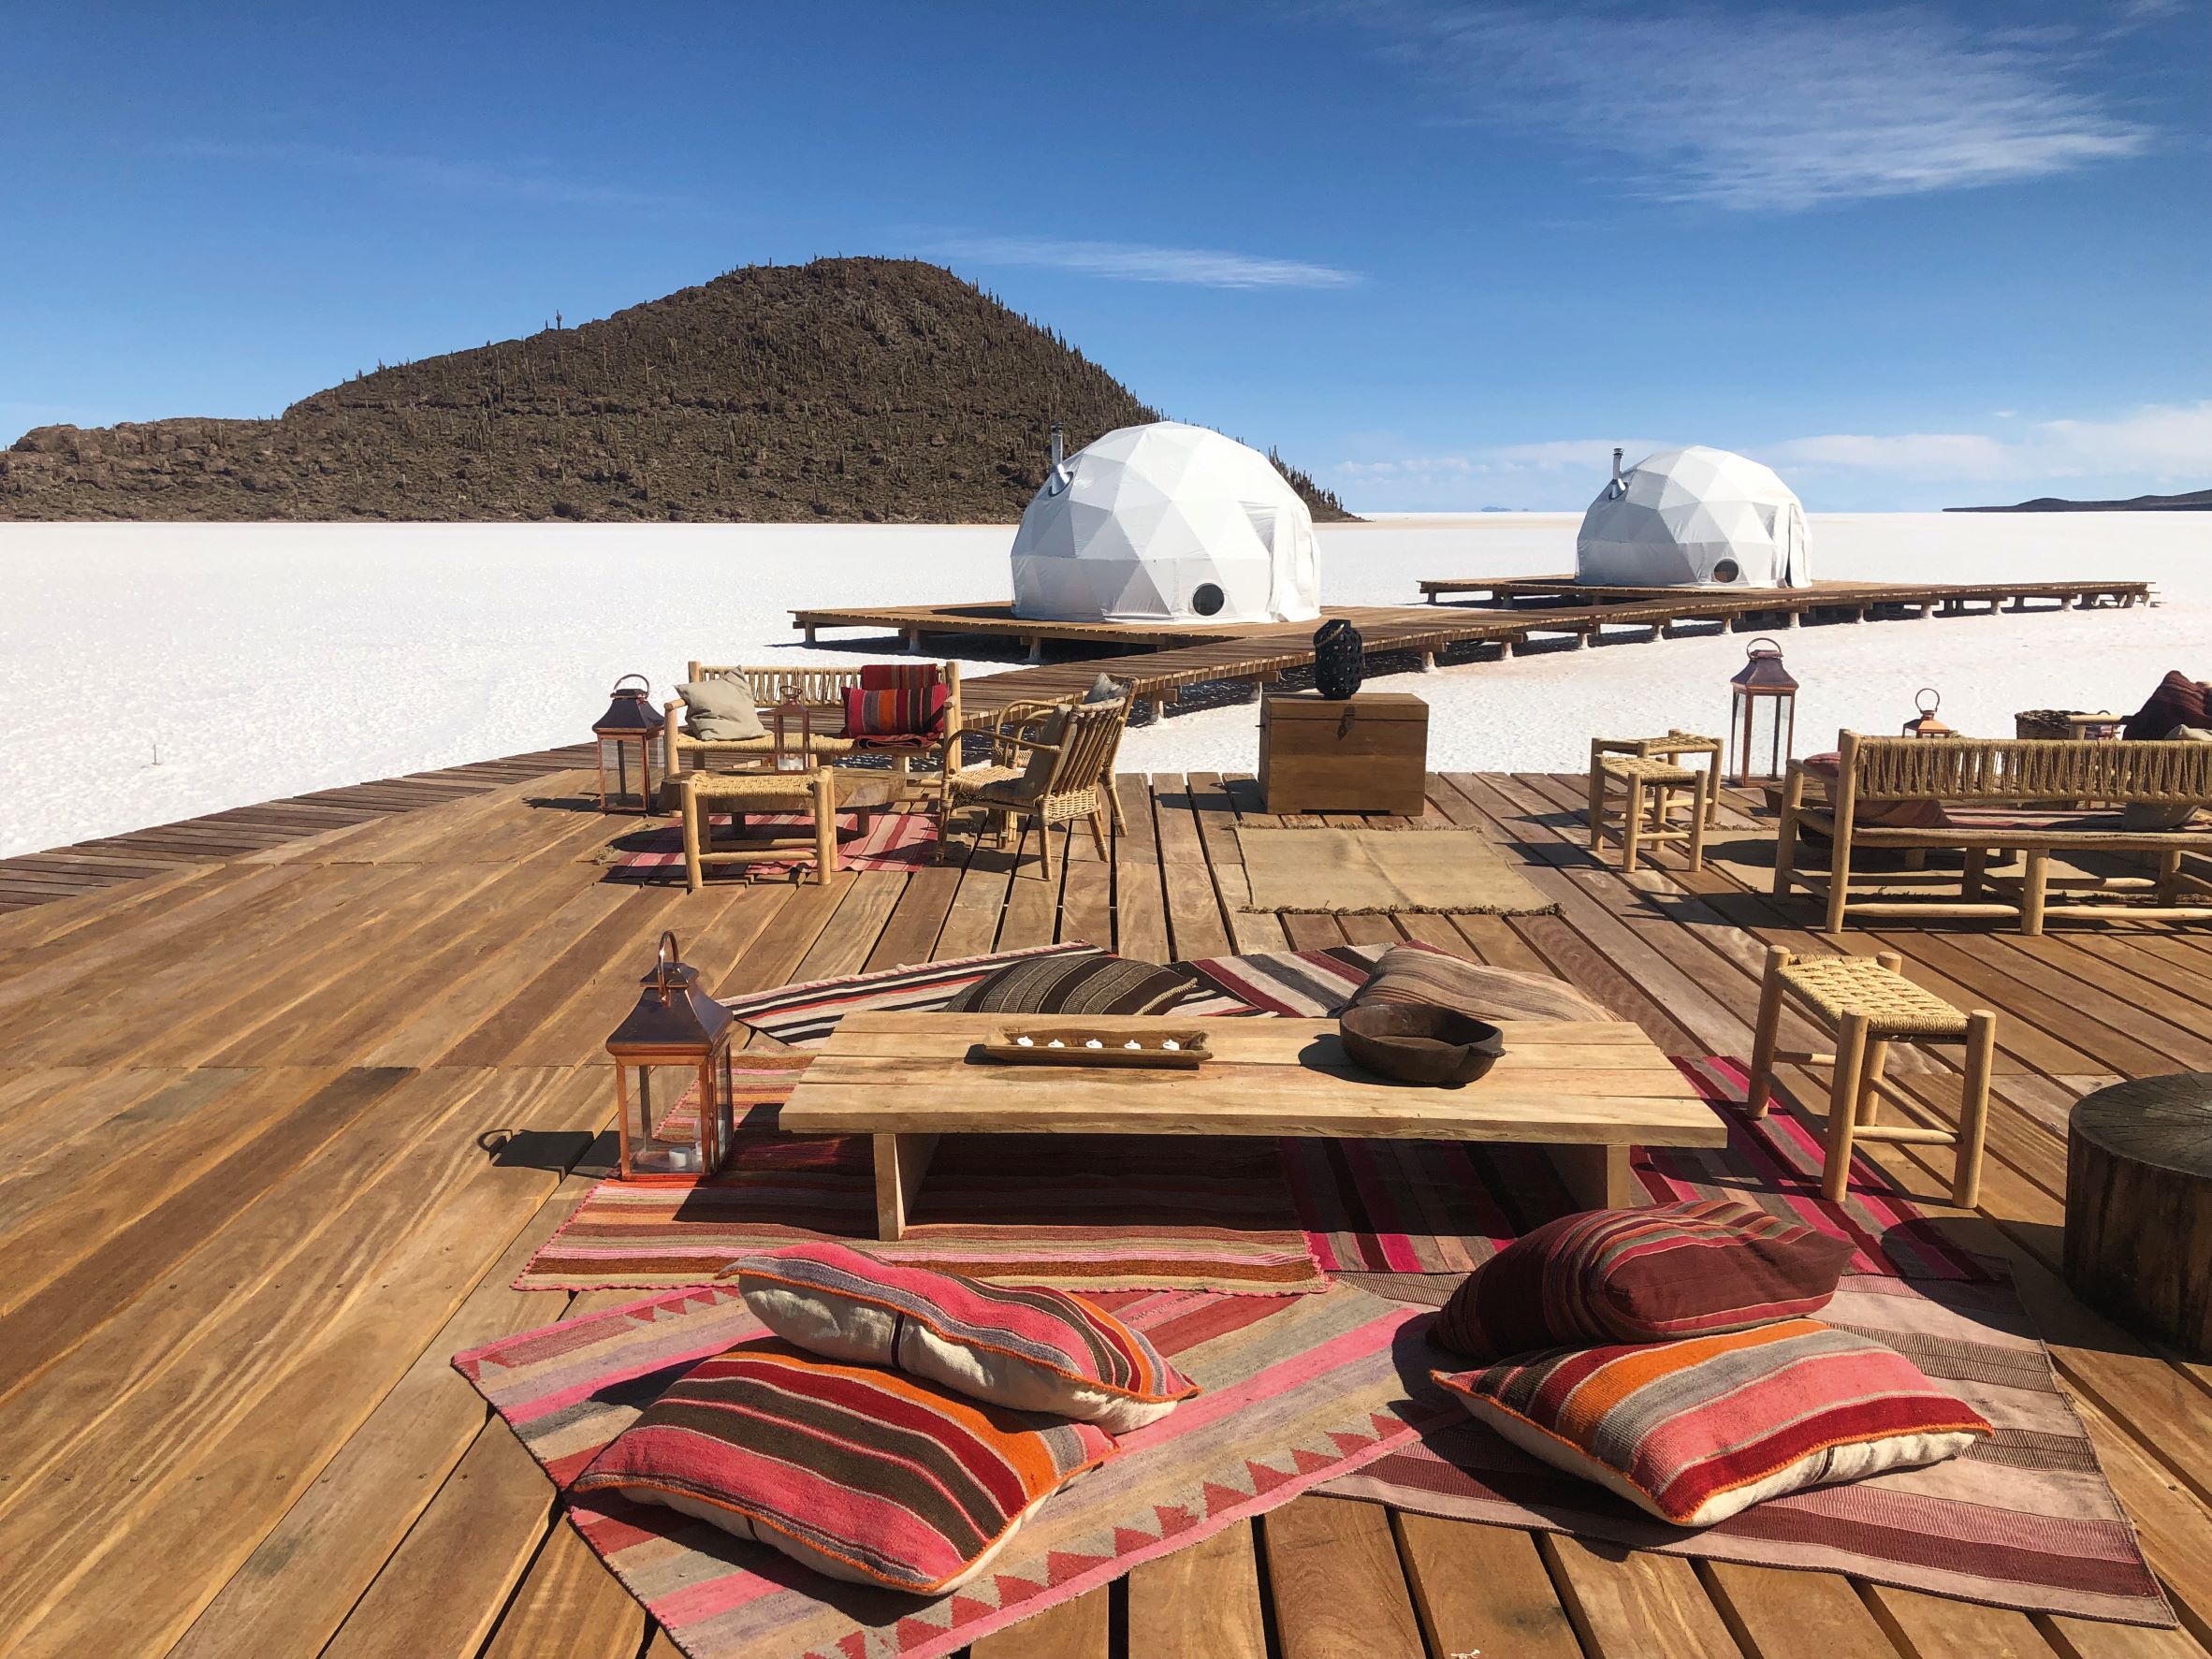 遊客也可以在 Lounge 帳篷外的木棧露臺上用餐賞景。